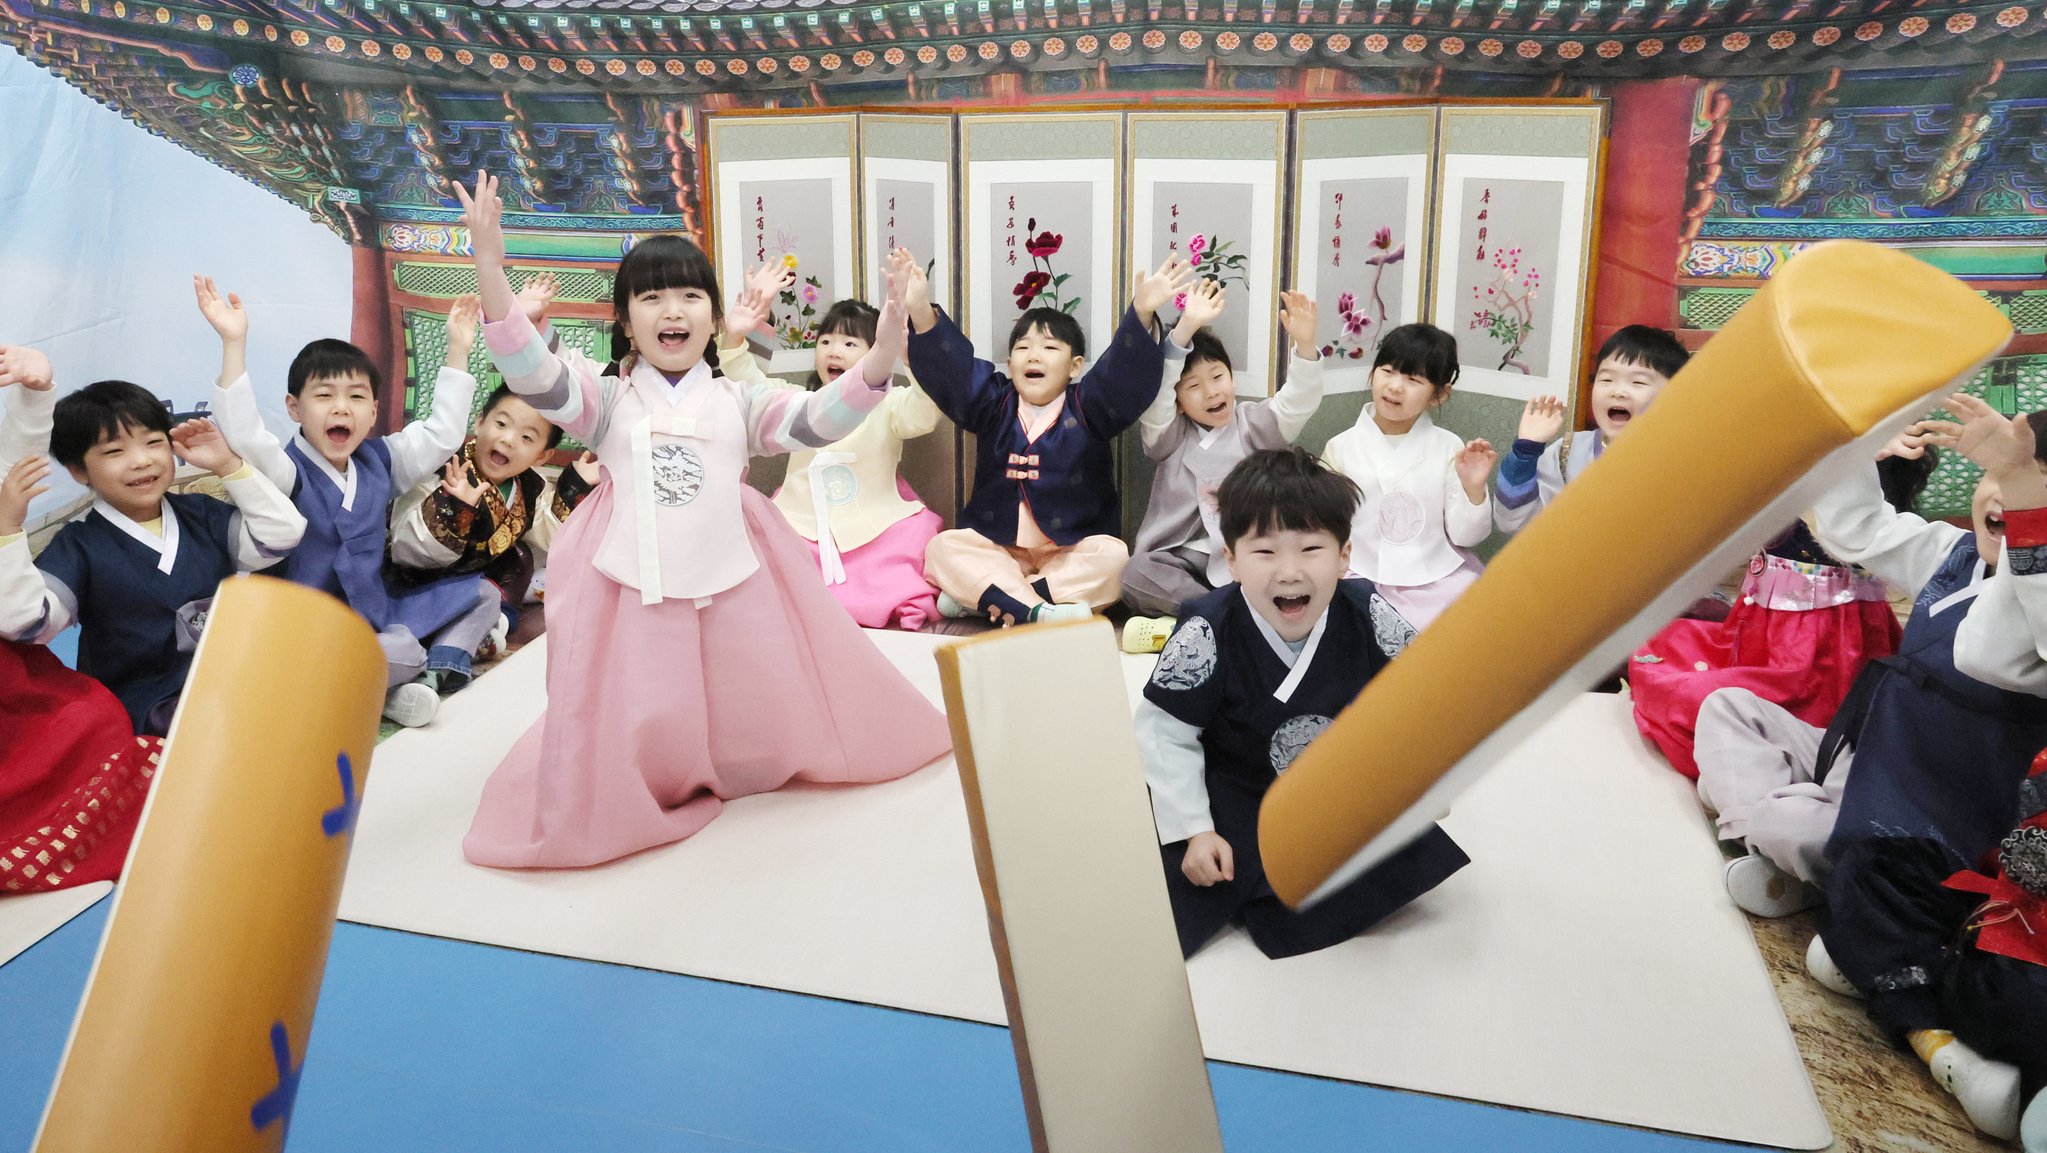 7일 부산 부산진구청 어린이집 원생들이 선생님의 지도에 따라 전통 윷놀이를 배우고 있다. 송봉근 기자 